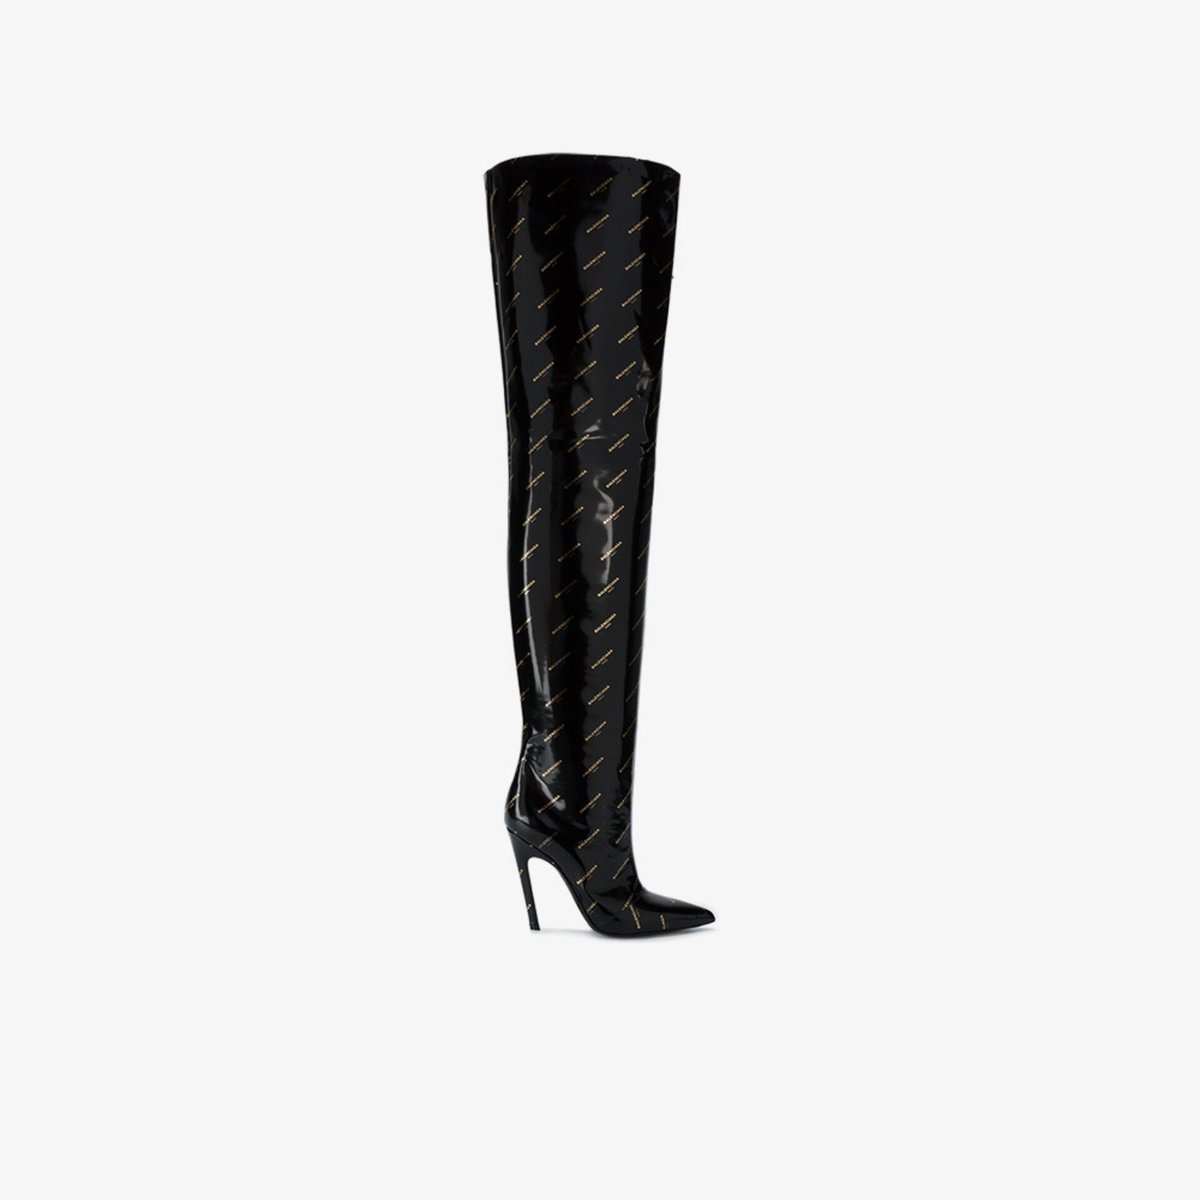 « Slash over the knees boots » par Balenciaga elle porte se nom a cause de son talon qui est légèrement incliné vers l’arrière et donne l’impression d’un slash .. elle existe aussi en bottines